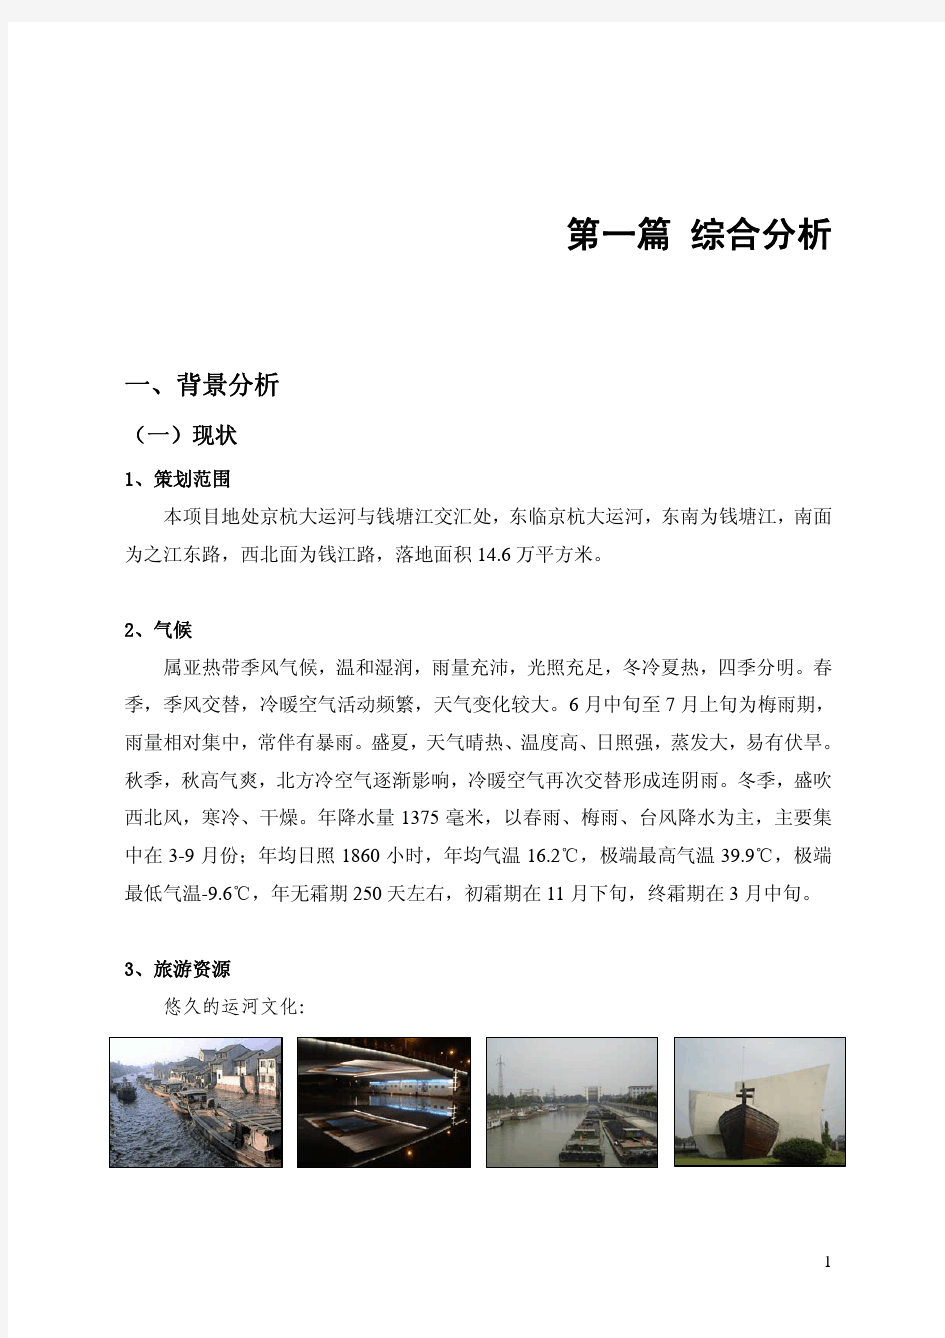 钱江新城生态公园商业业态定位